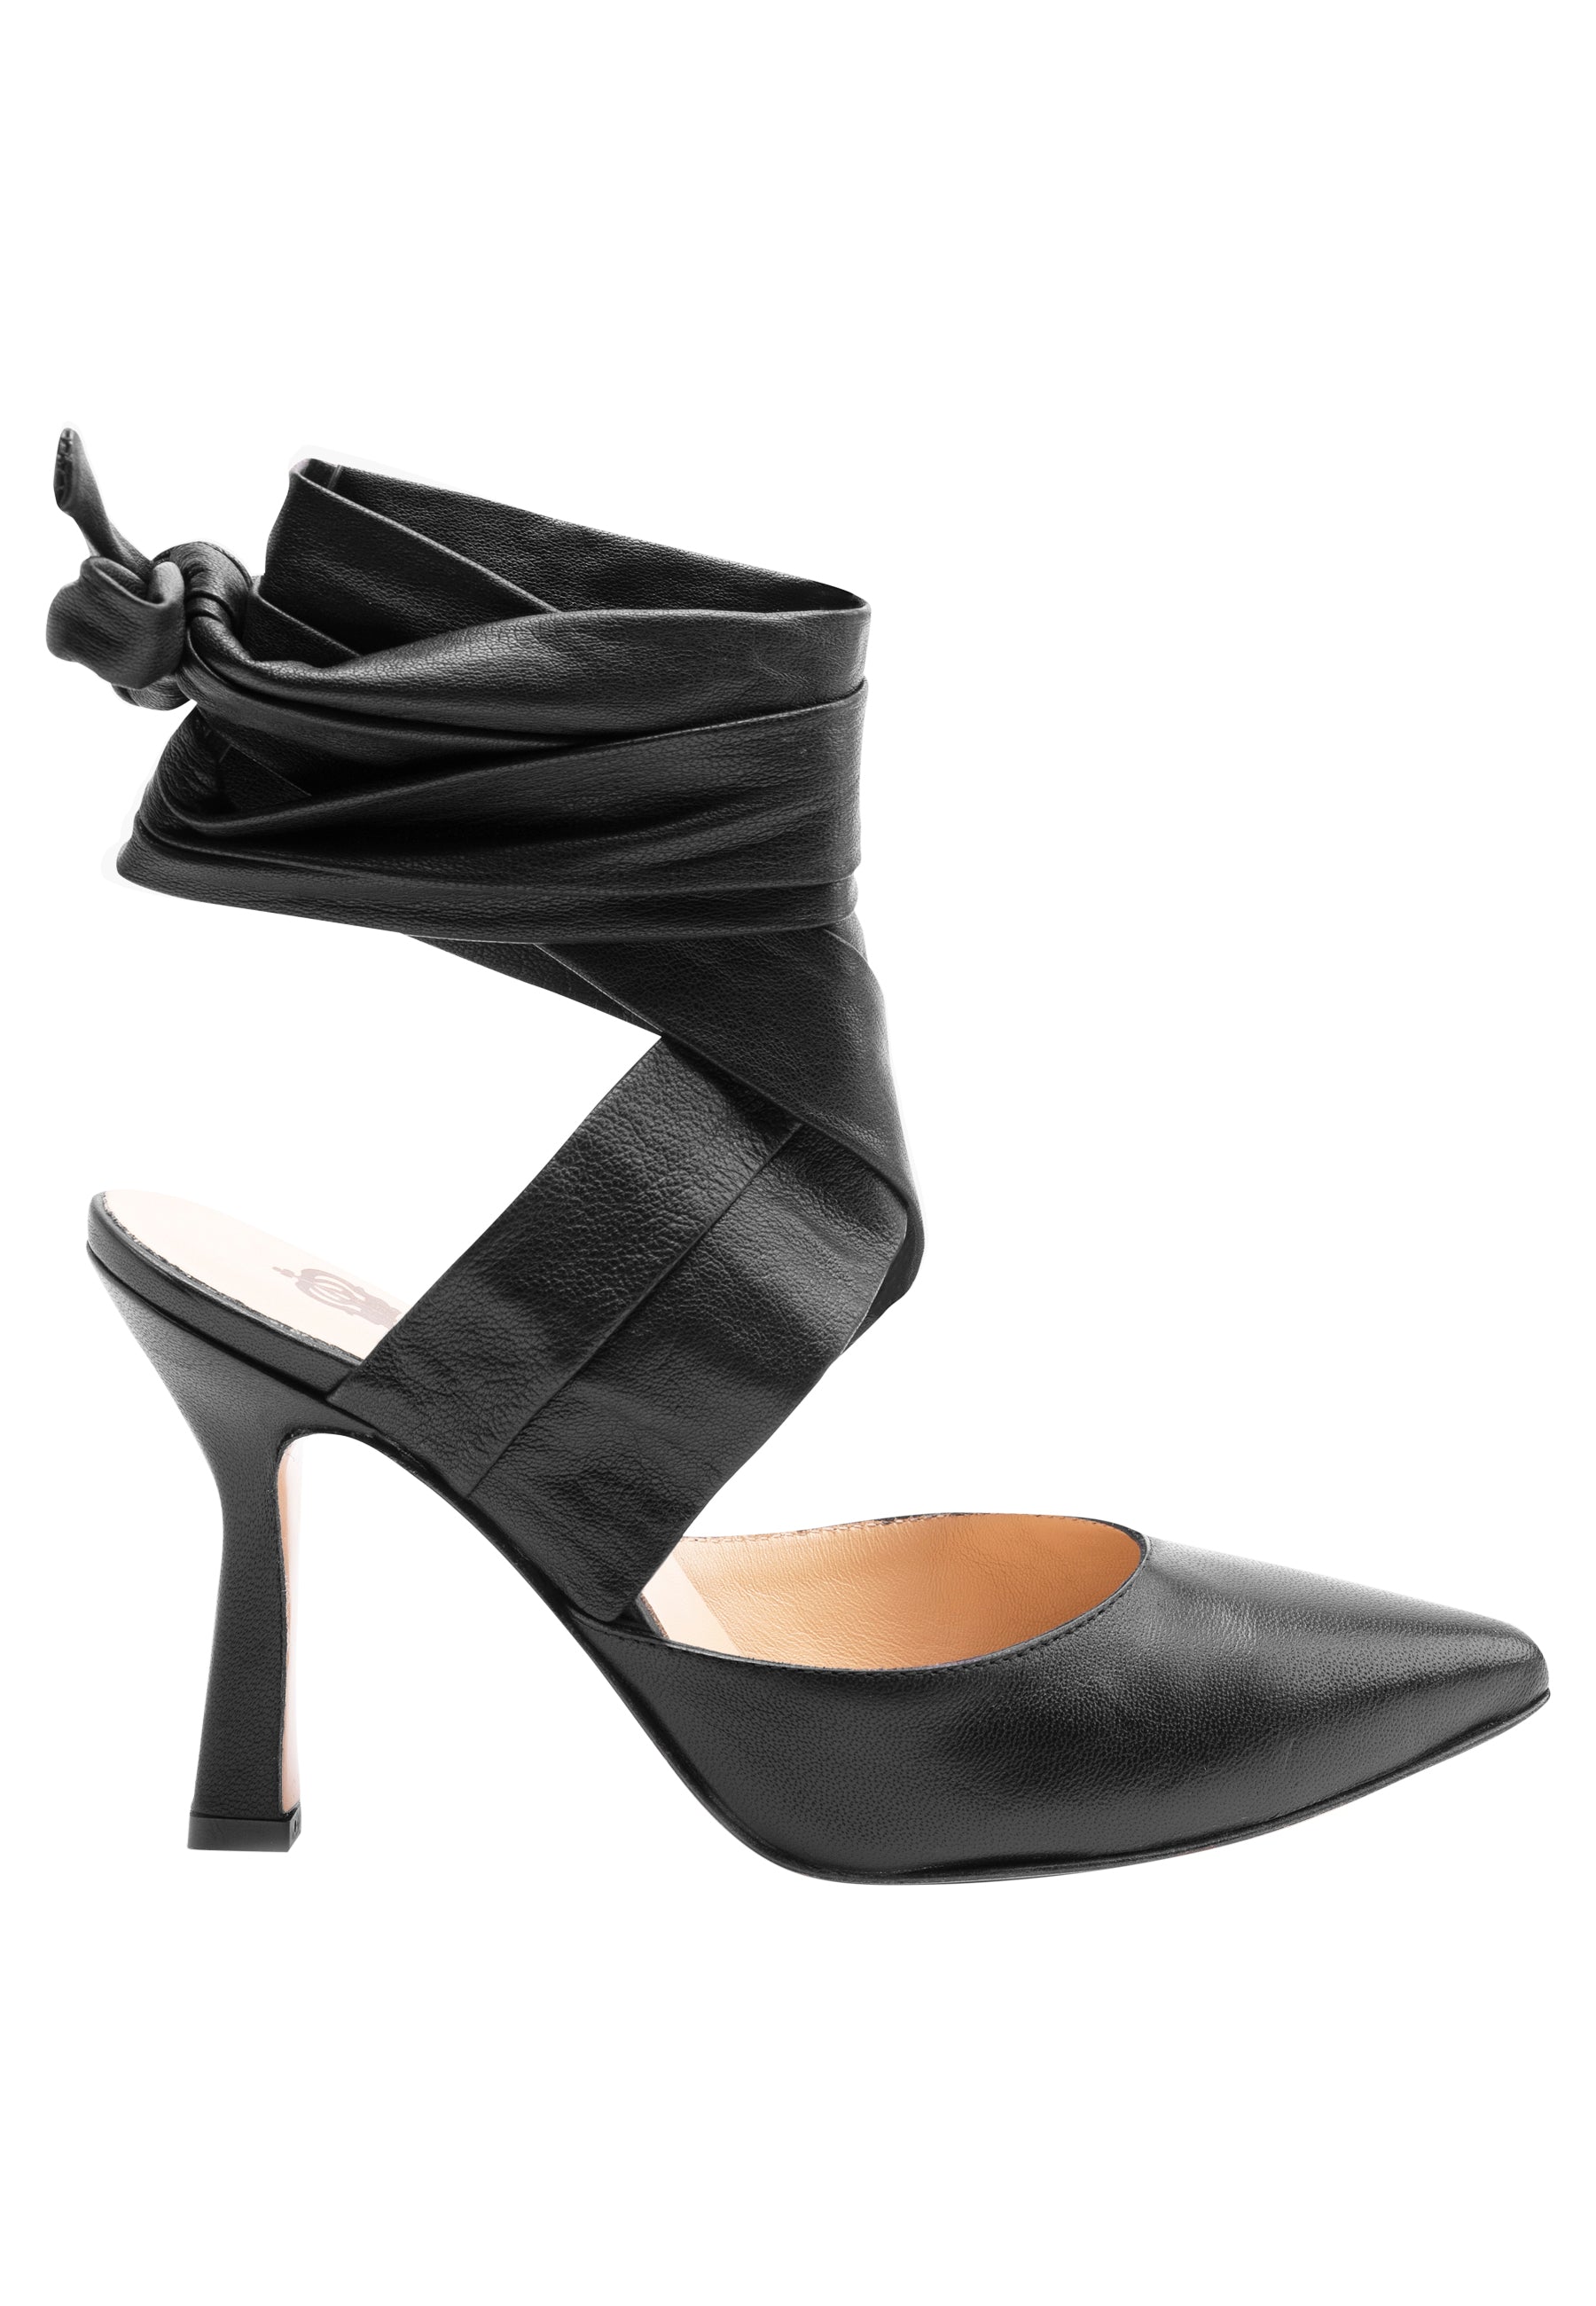 Sandali donna in pelle nera con lacci alla caviglia e tacco alto